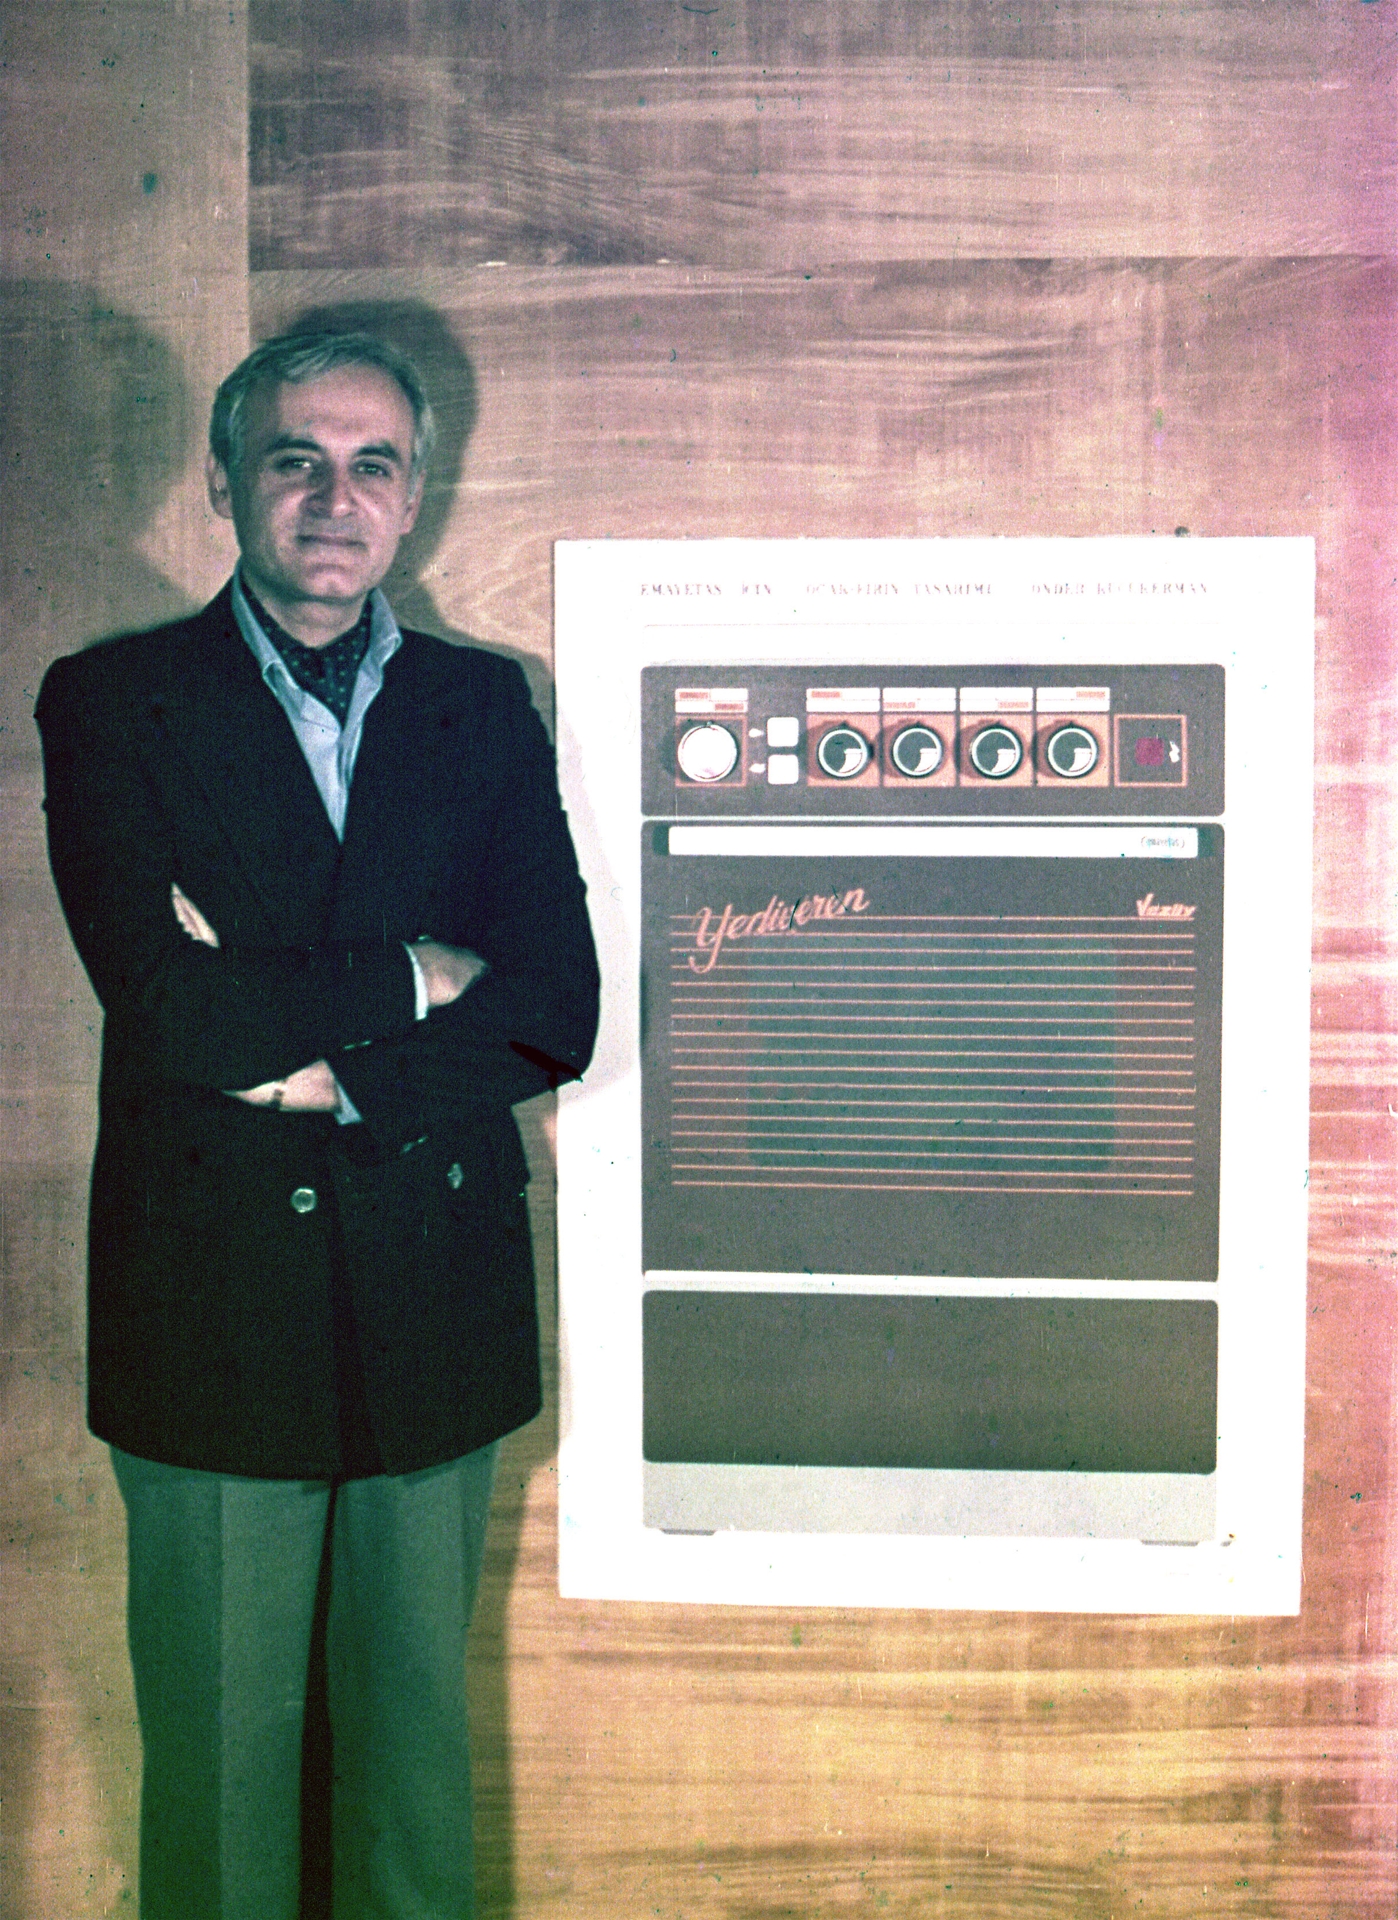 1980 Emayetaş için fırın tasarımı önünde